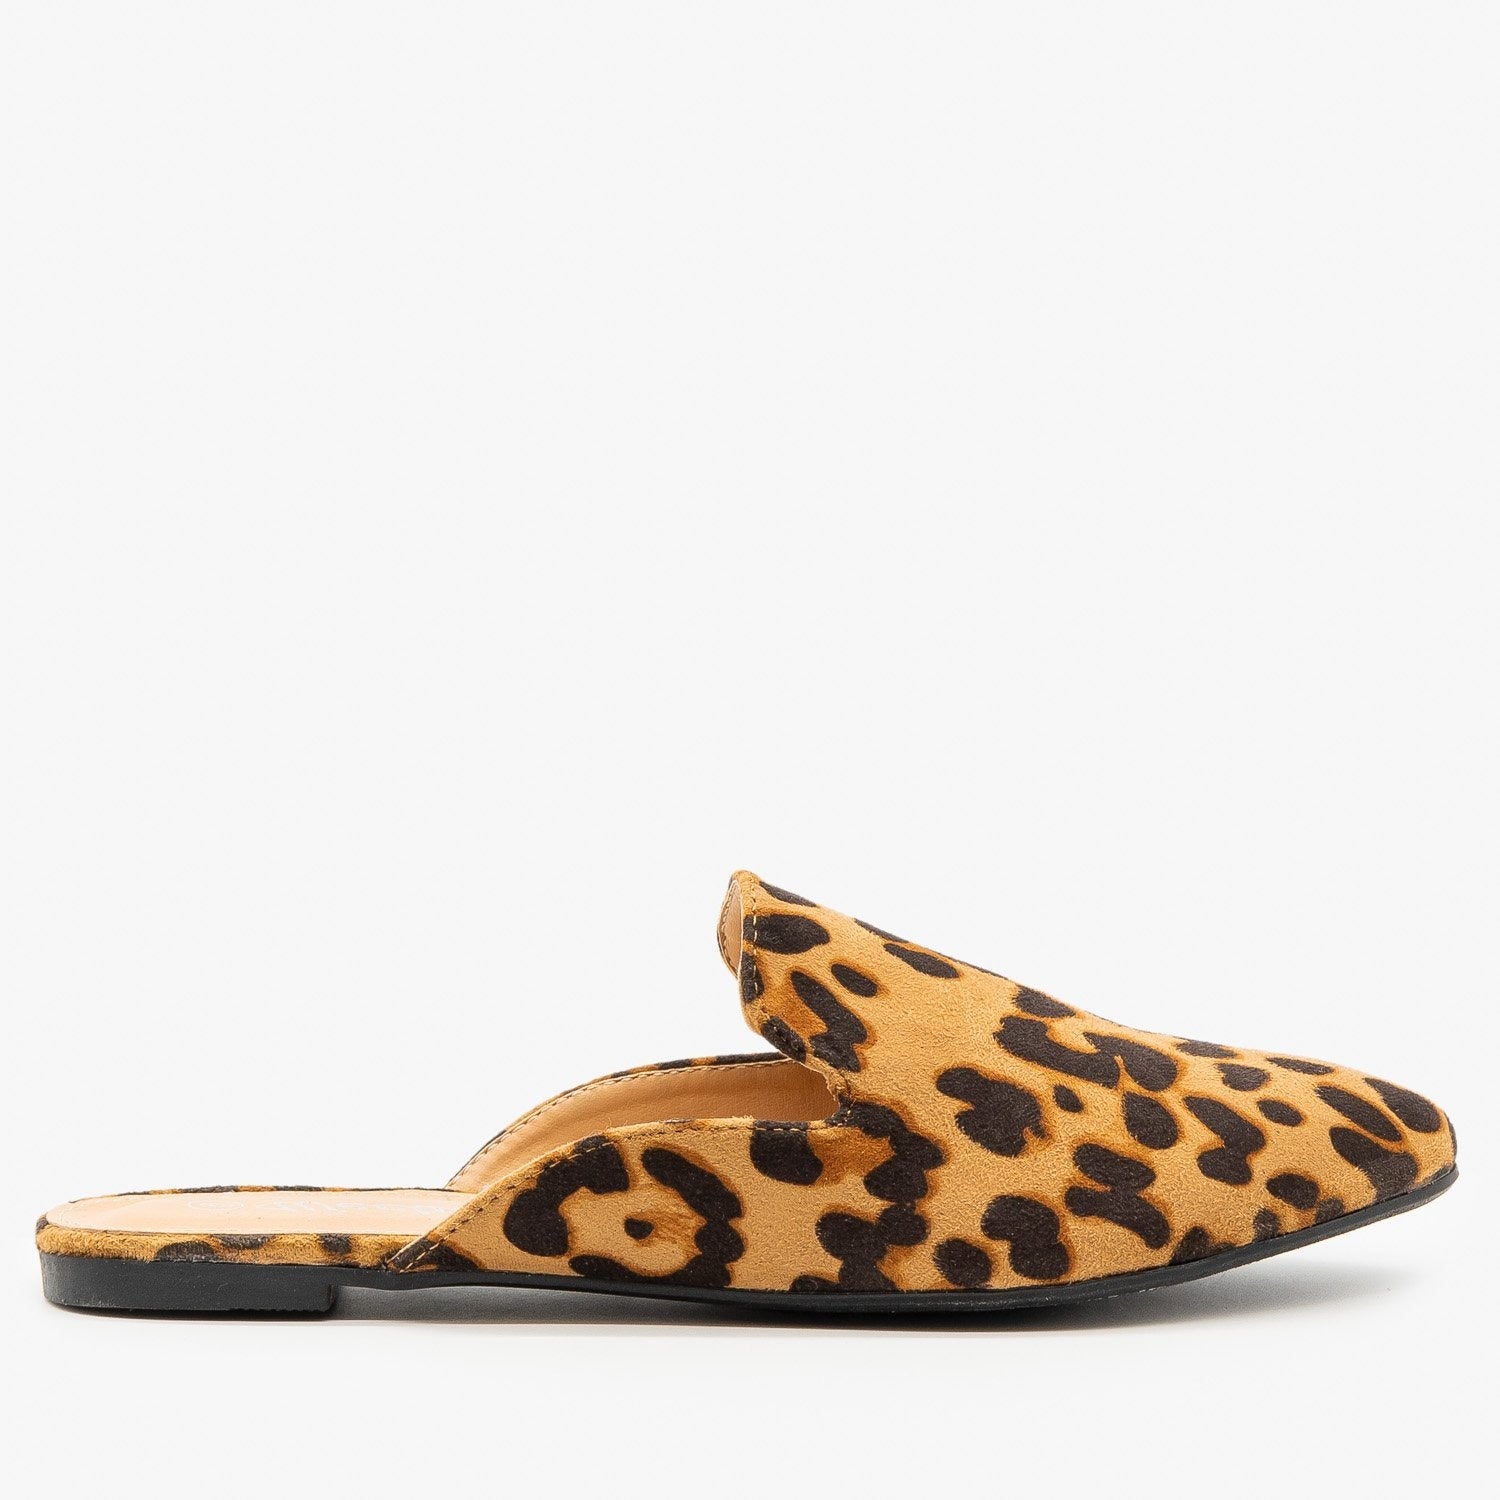 leopard print mule shoes